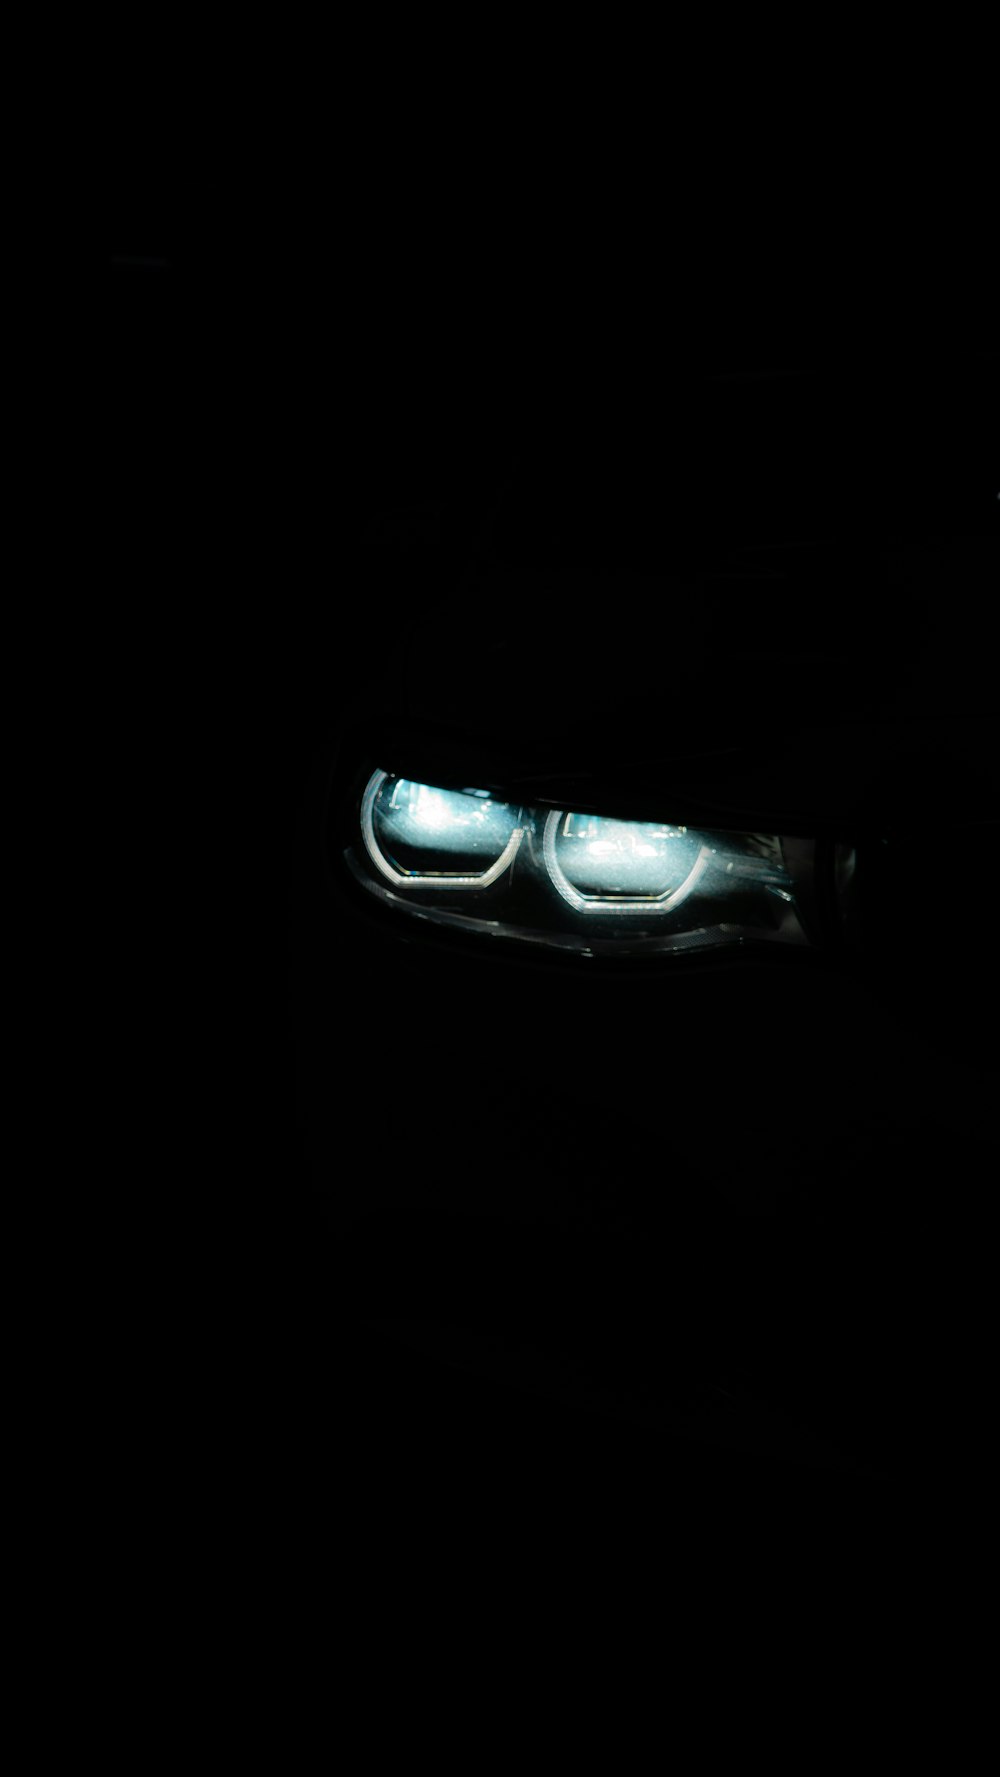 os faróis de um carro no escuro